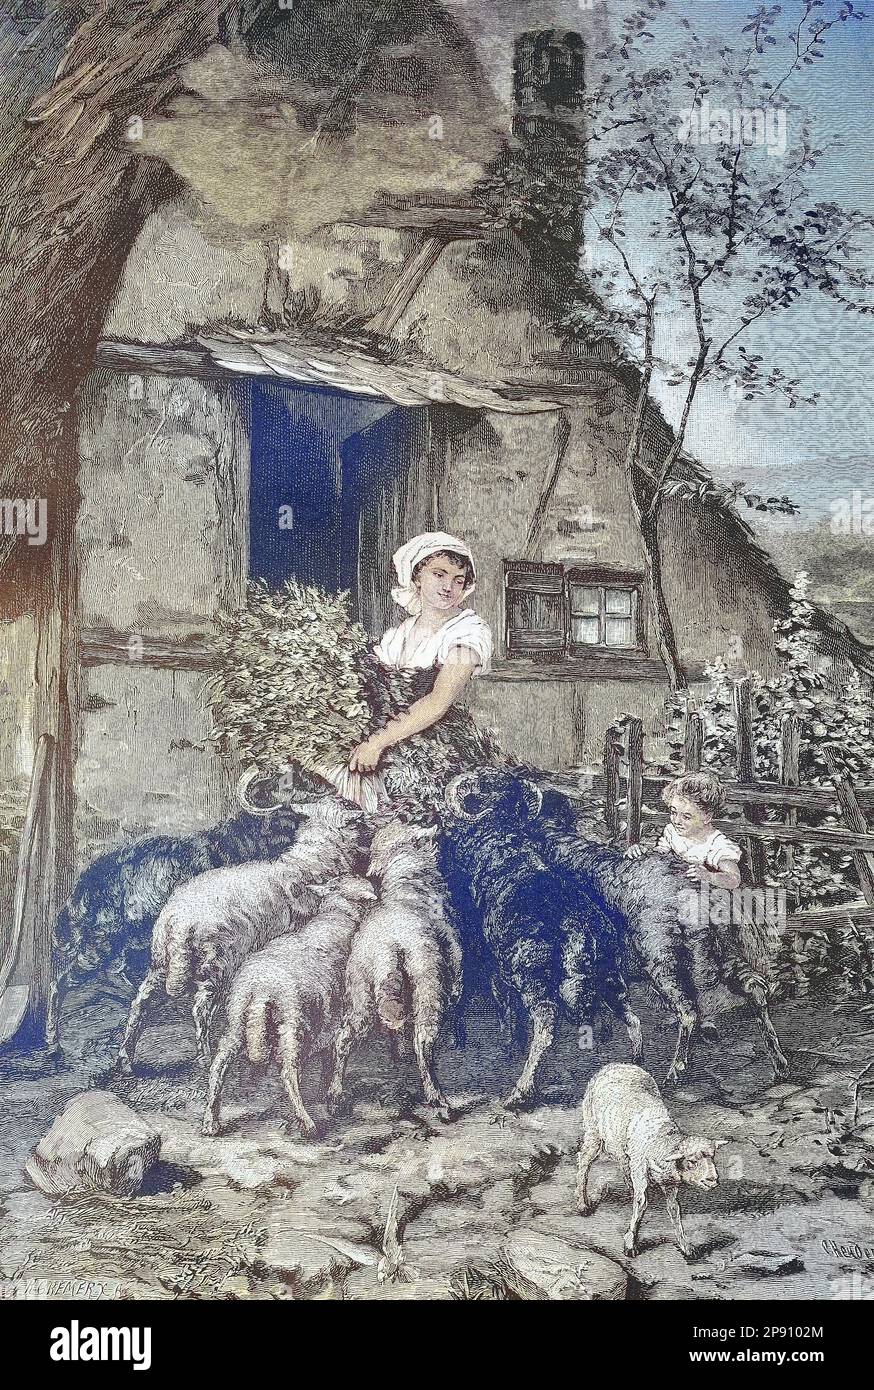 Aufdringliche Schafe bei der Fütterung der Tiere, Bäuerin mit einem Bündel frisches Gras, Historisch, digital restaurierte Reproduktion von einer Vorlage aus dem 19. Jahrhundert Foto Stock